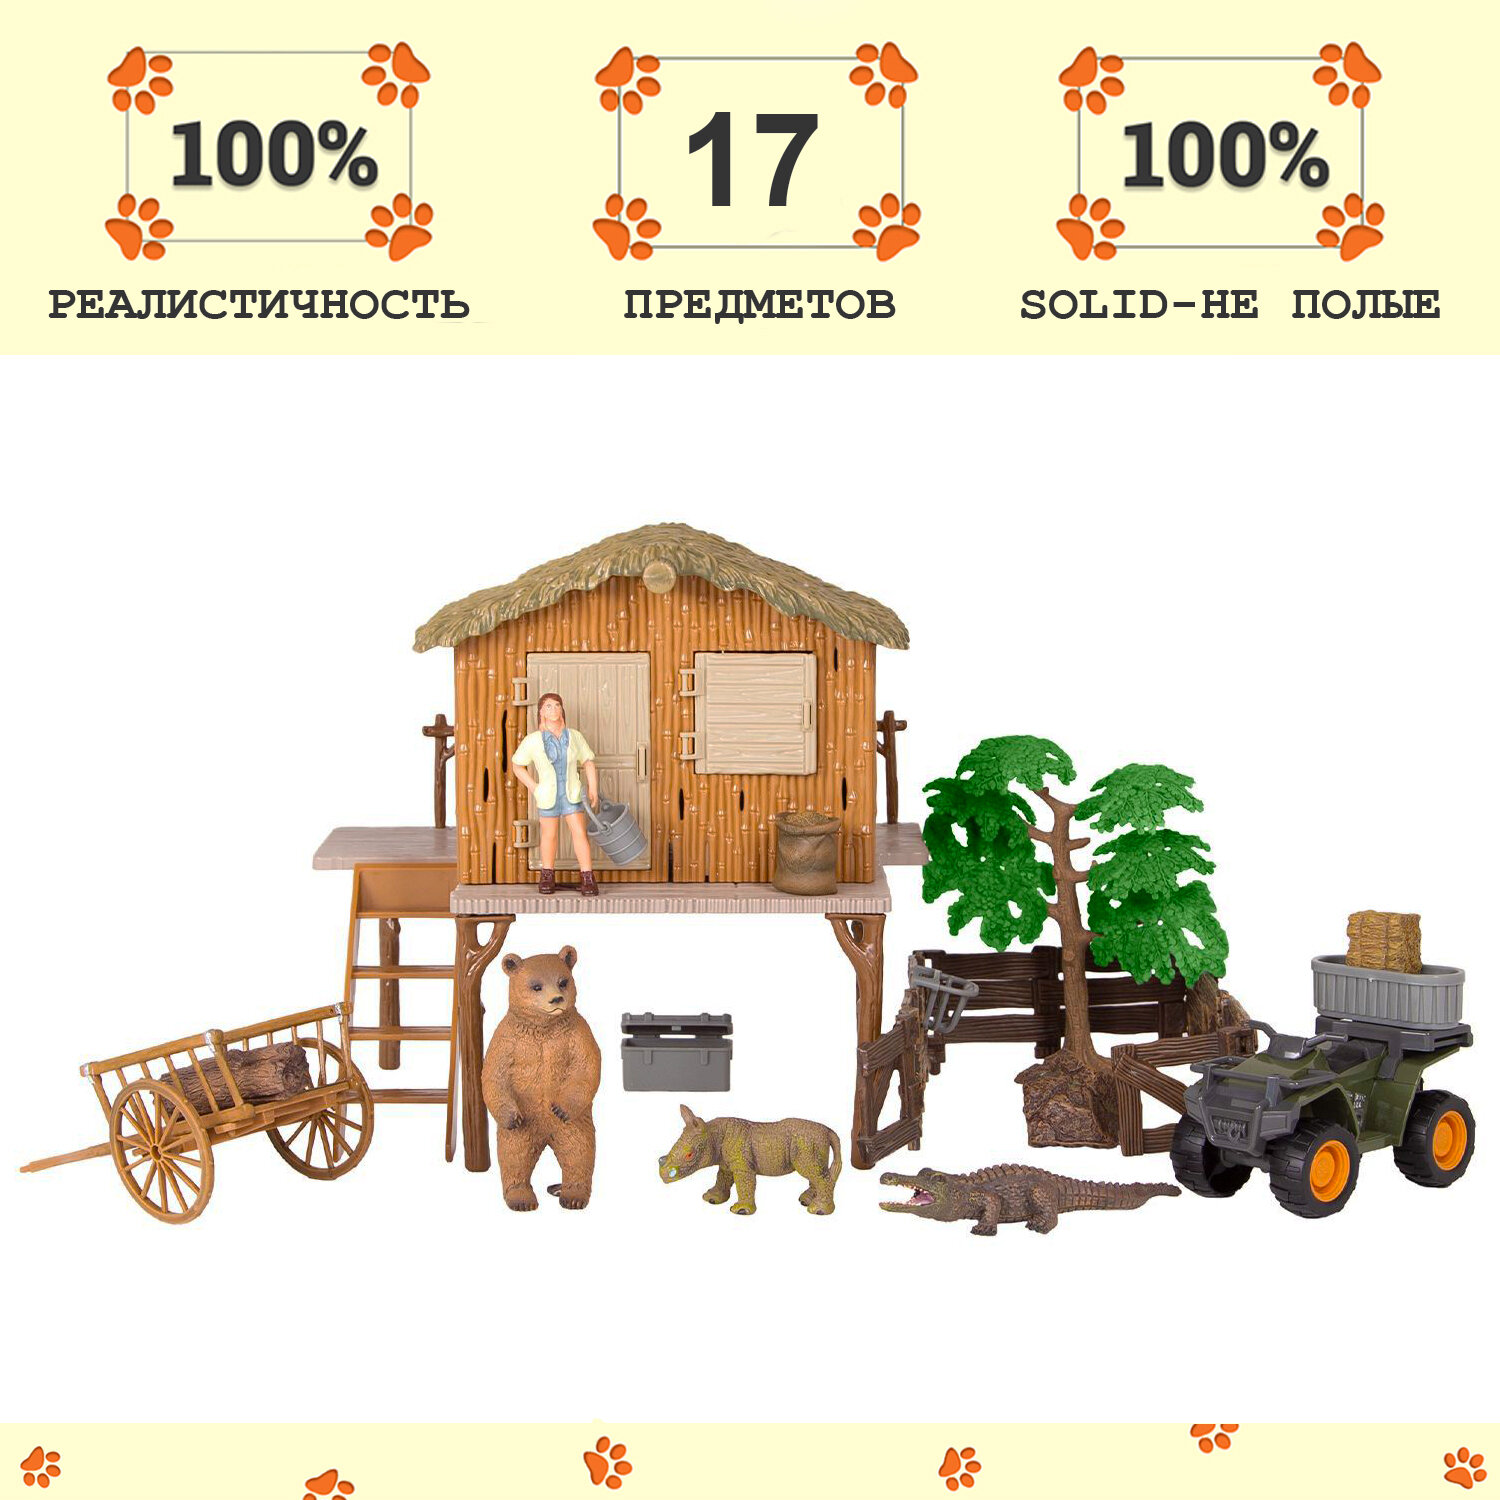 Набор фигурок животных серии "На ферме": Ферма игрушка, крокодил, медведь, носорог, квадроцикл, фермер, инвентарь - 17 предметов